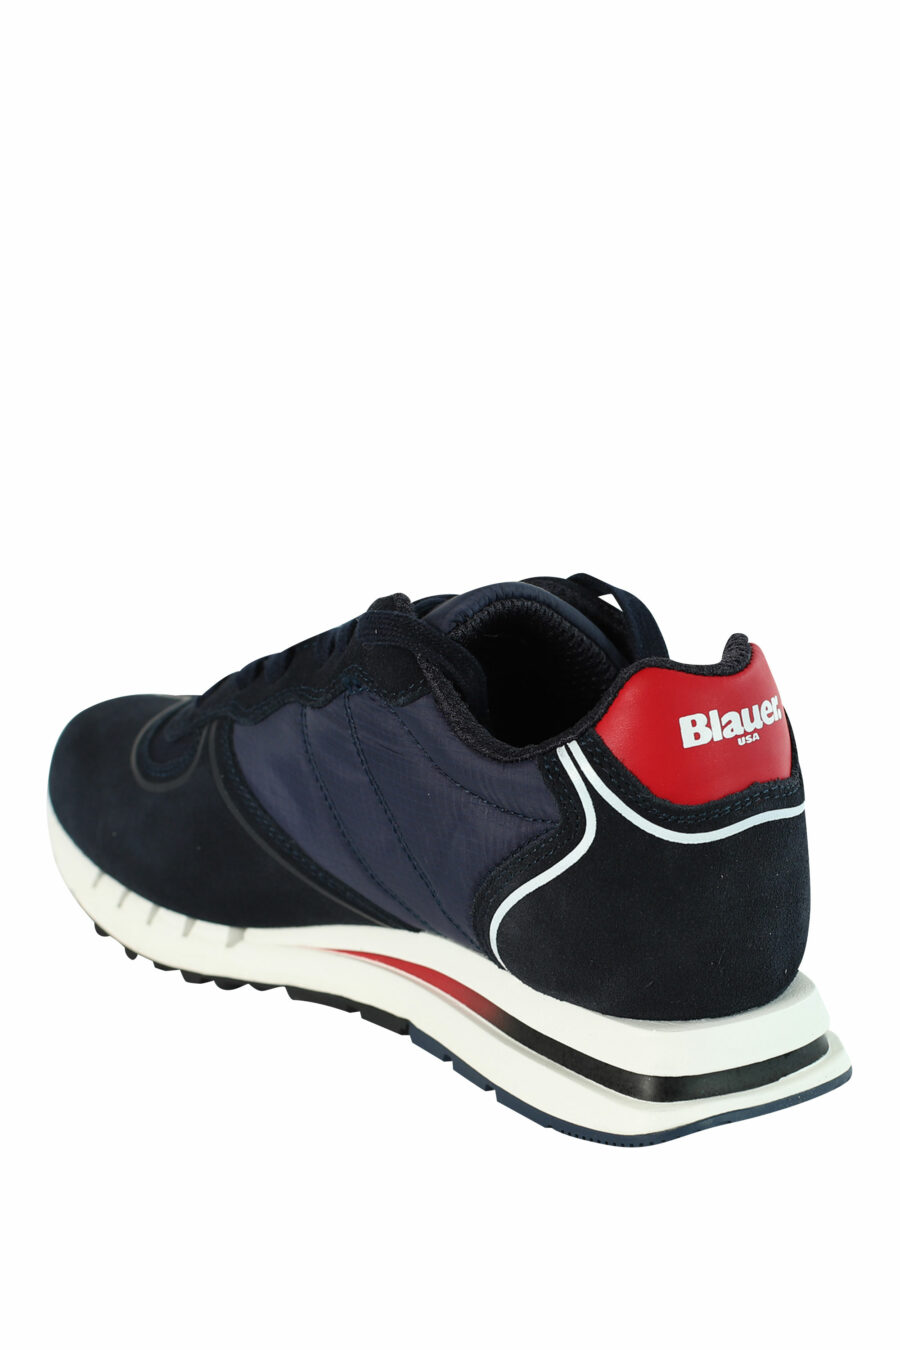 Blue "QUARTZ" shoes with red details - 8058156499454 4